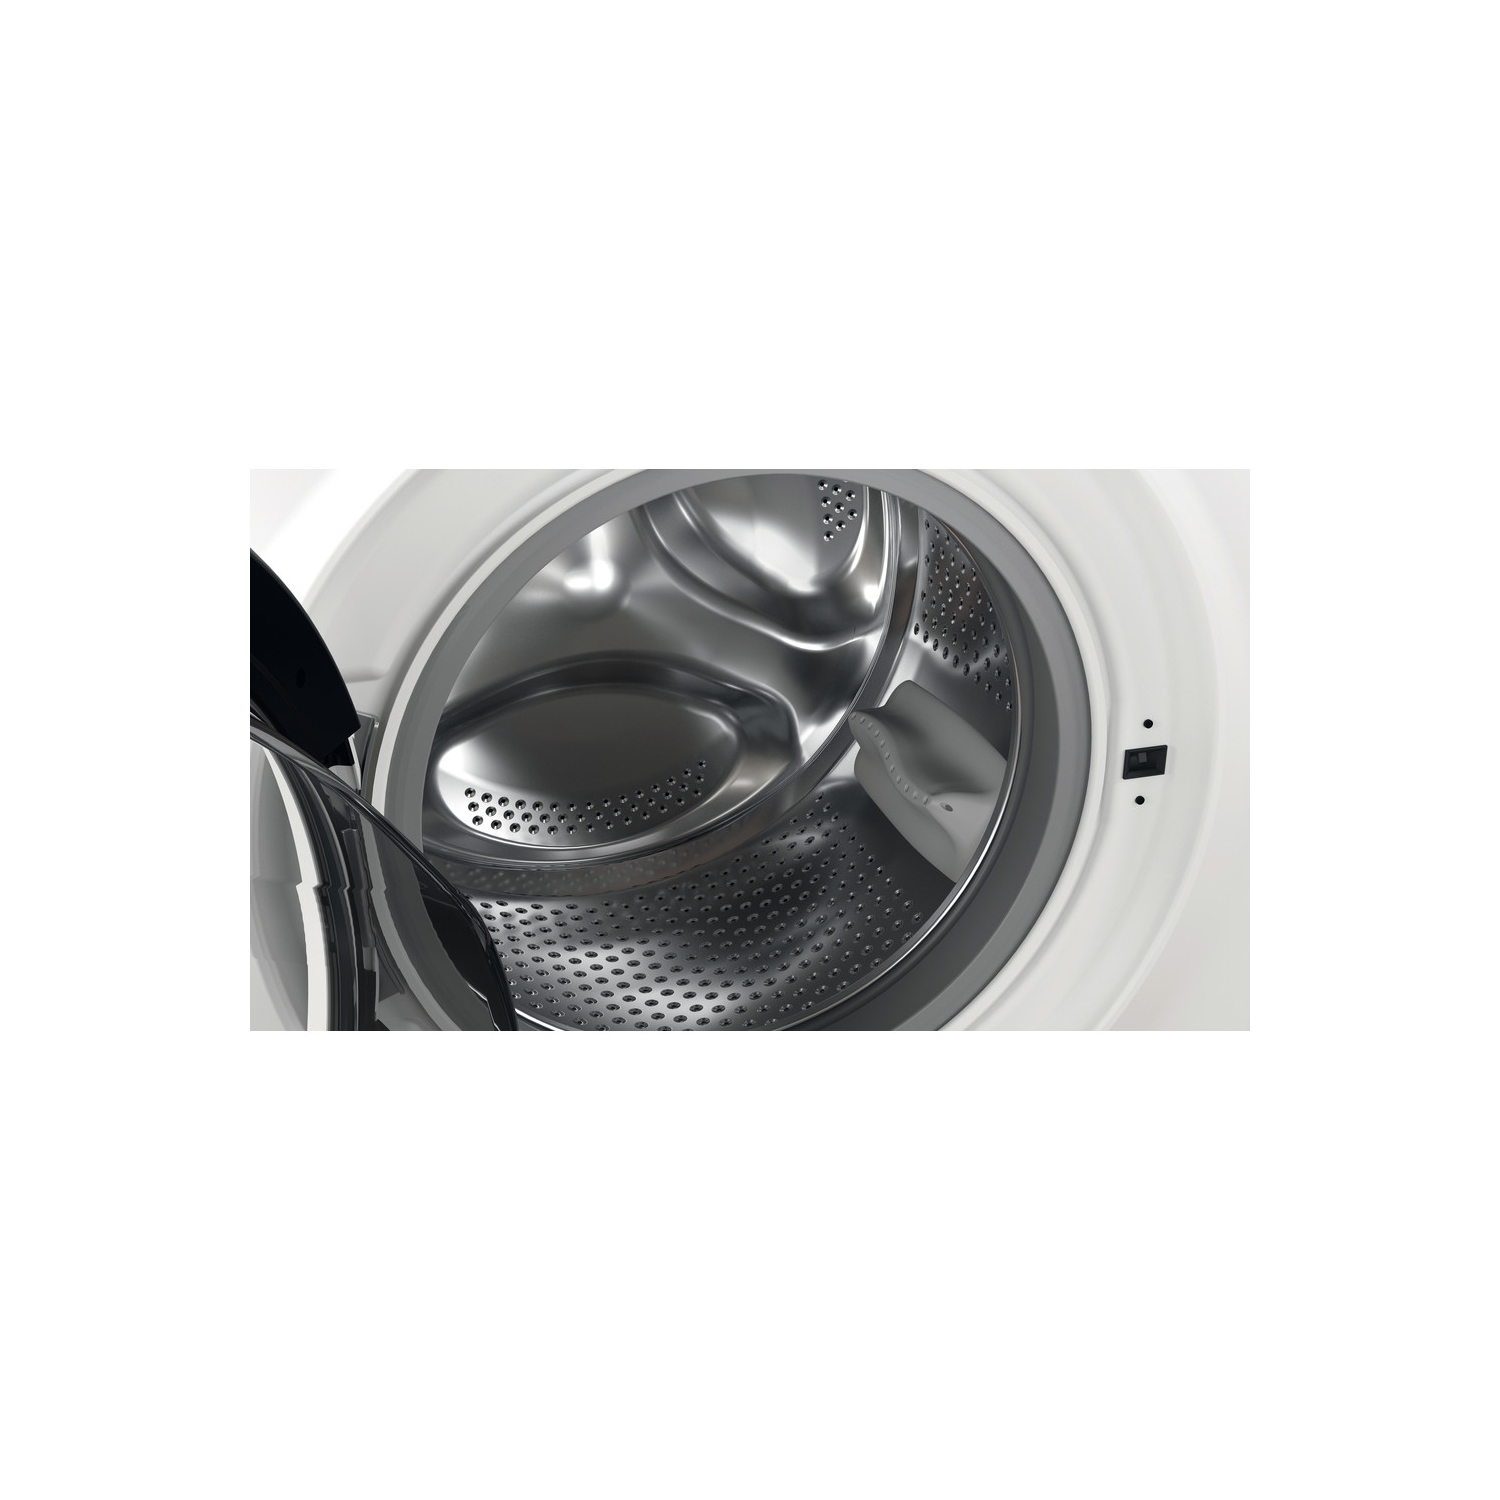 Hotpoint 8kg 1400 Spin Washing Machine - White - D - 3